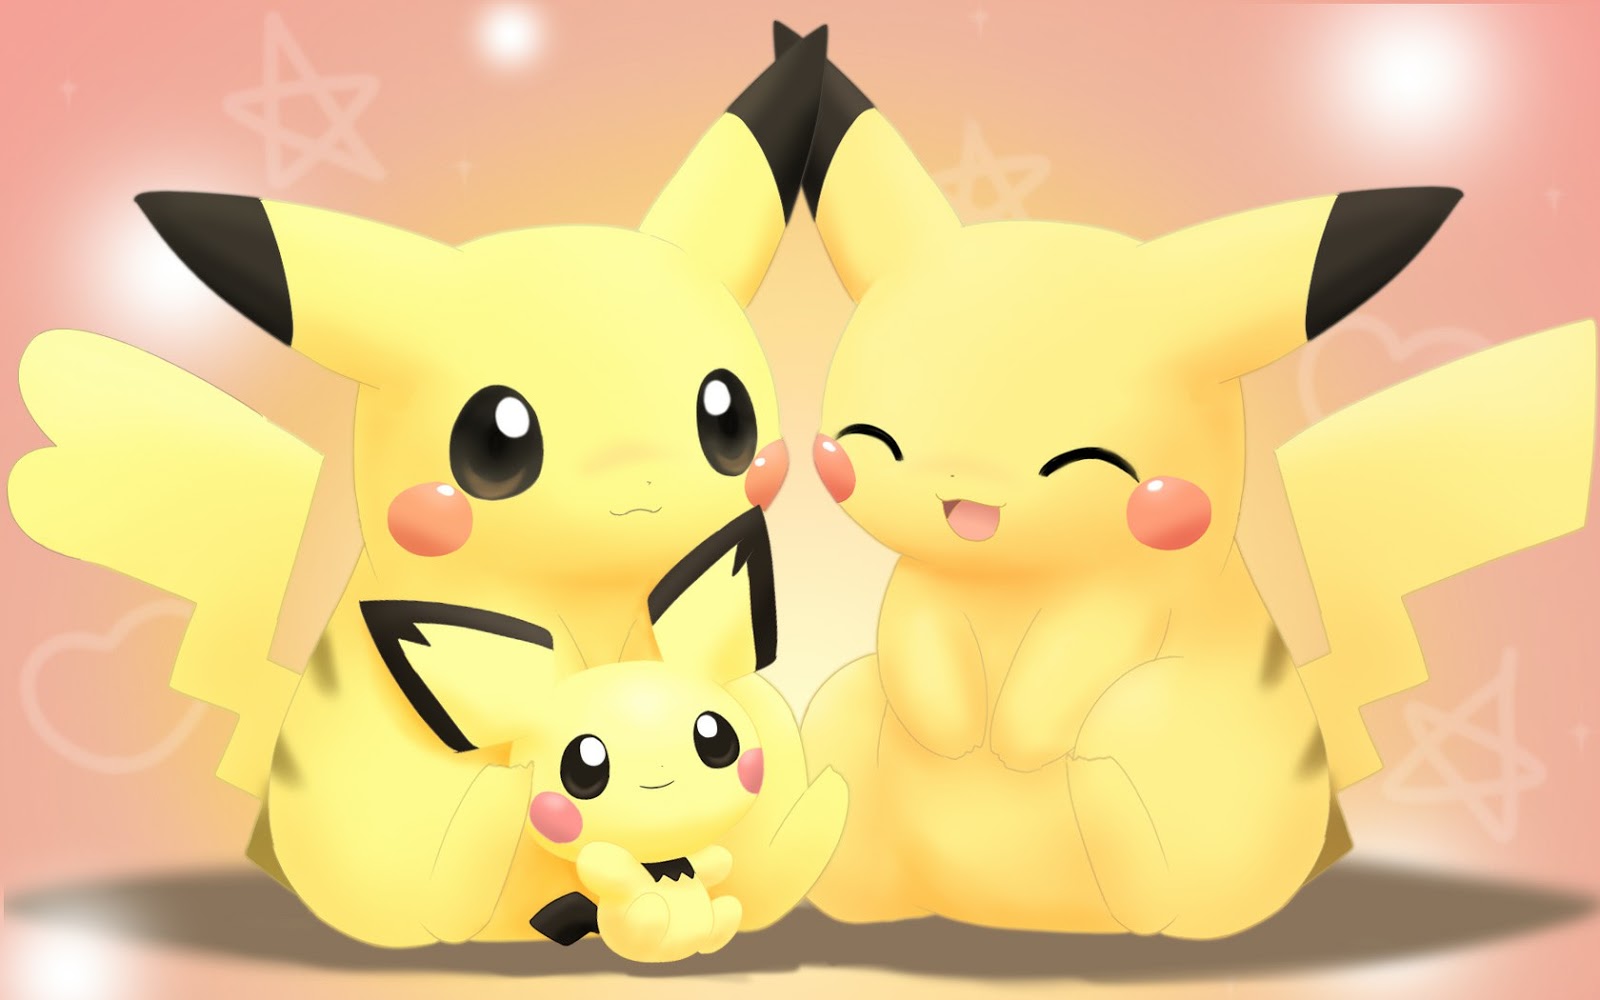 Tranh tô màu pikachu siêu cute đơn giản dễ vẽ - Tải miễn phí